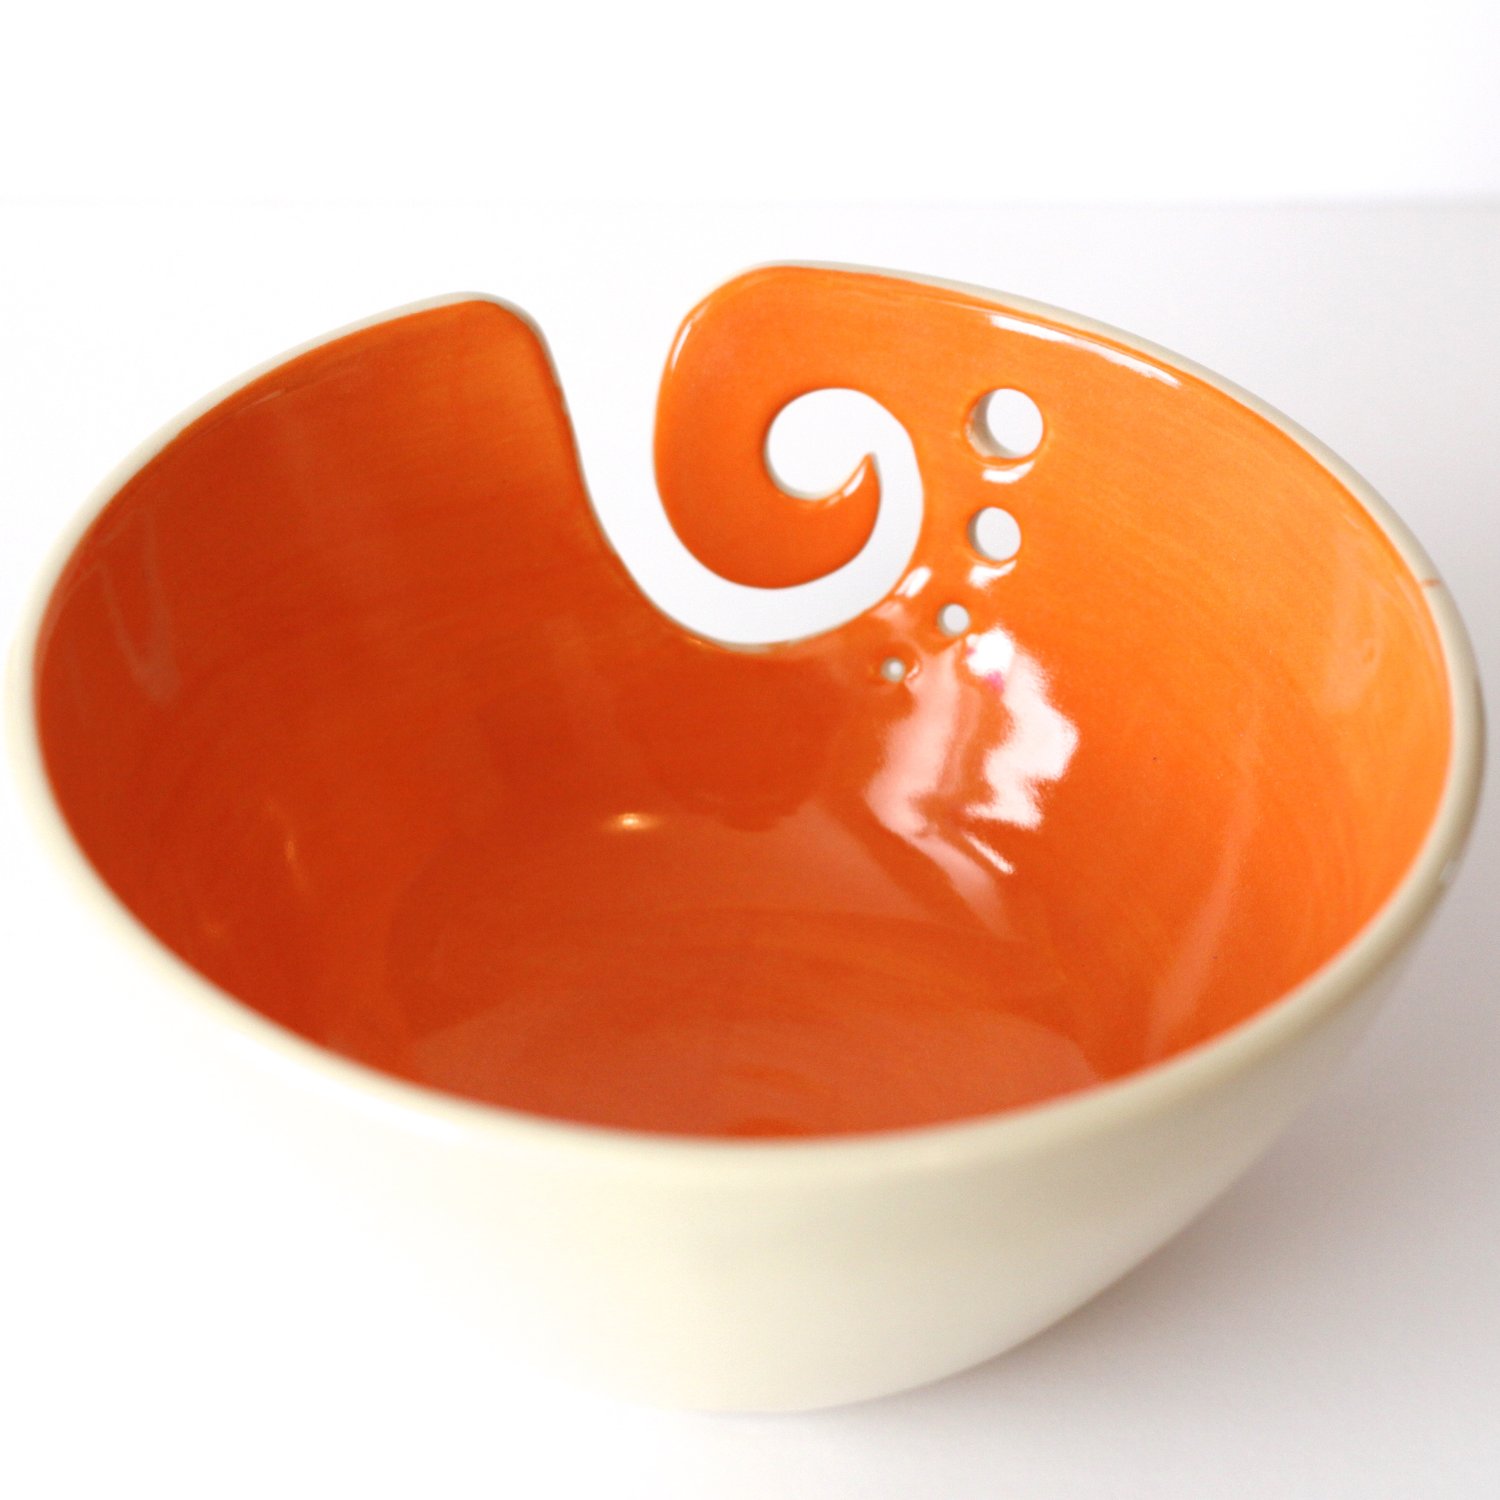 Image of Orange Yarn Bowl / Knitting Bowl /Orange and White Yarn Bowl / 6 inch Yarn Bowl / Ready to Ship